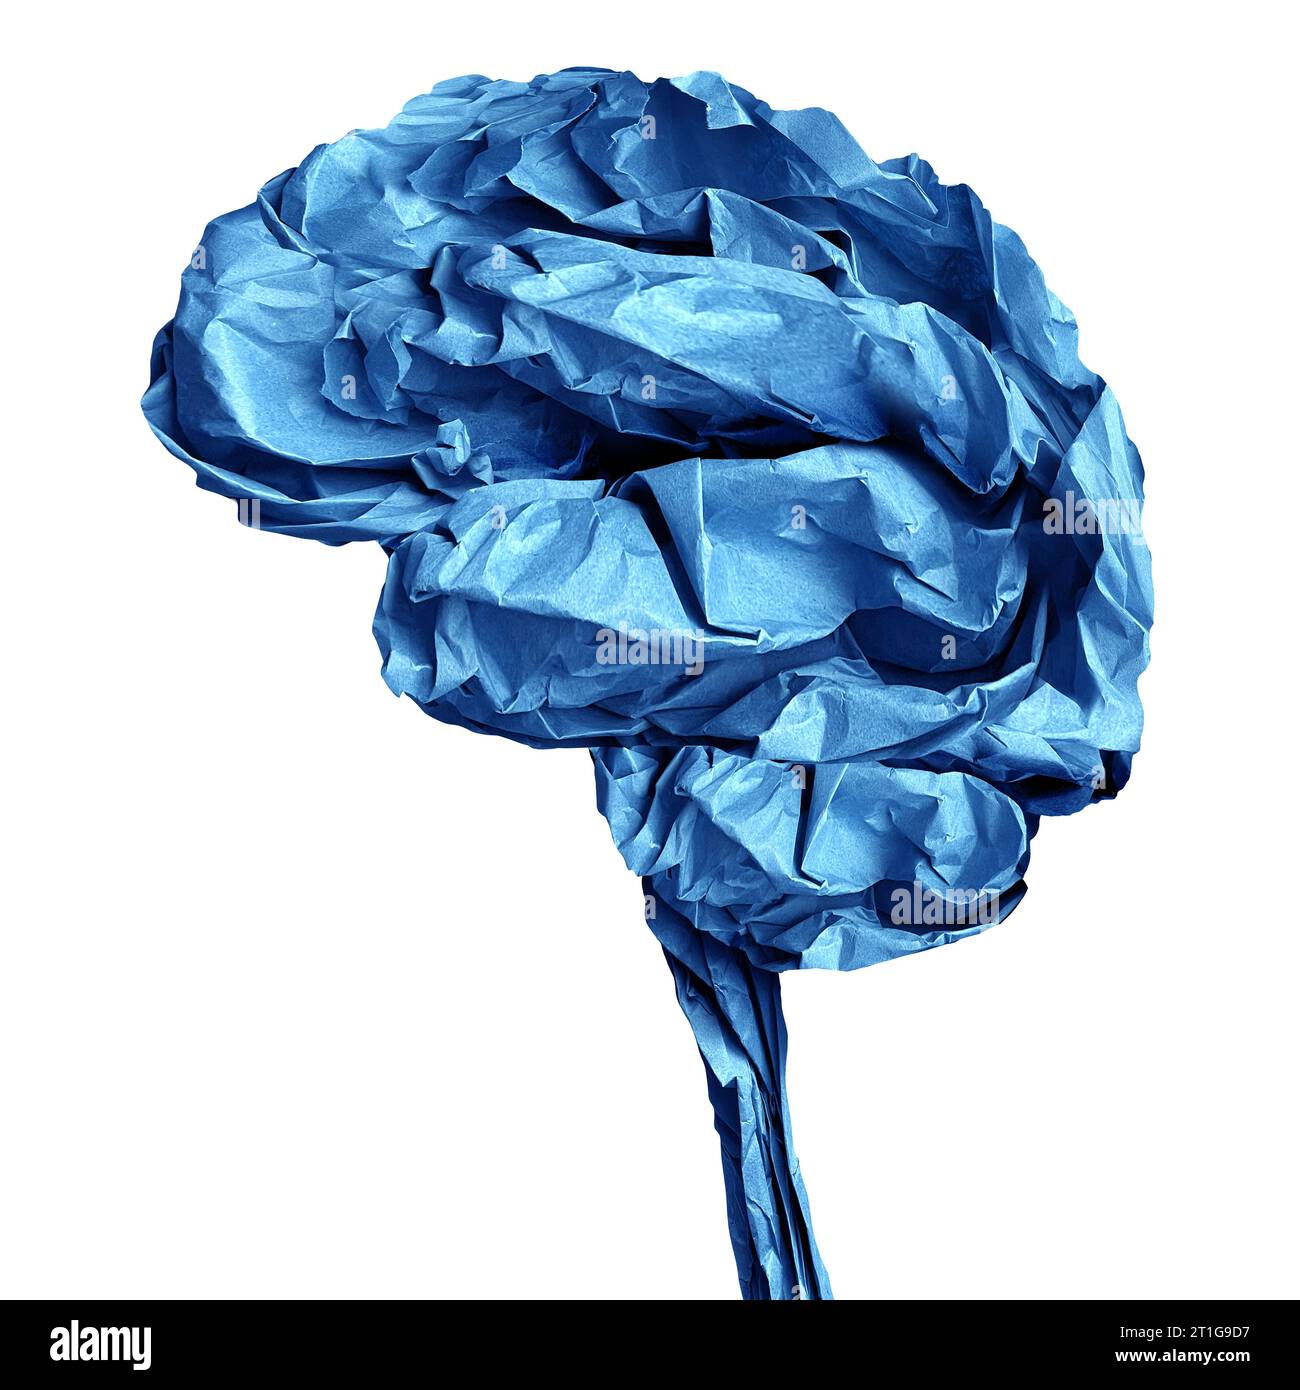 Objet en papier froissé de cerveau humain comme neurologie et symbole médical anatomique cognitif d'un esprit et d'une fonction neurologique ou d'un accident vasculaire cérébral lié Banque D'Images